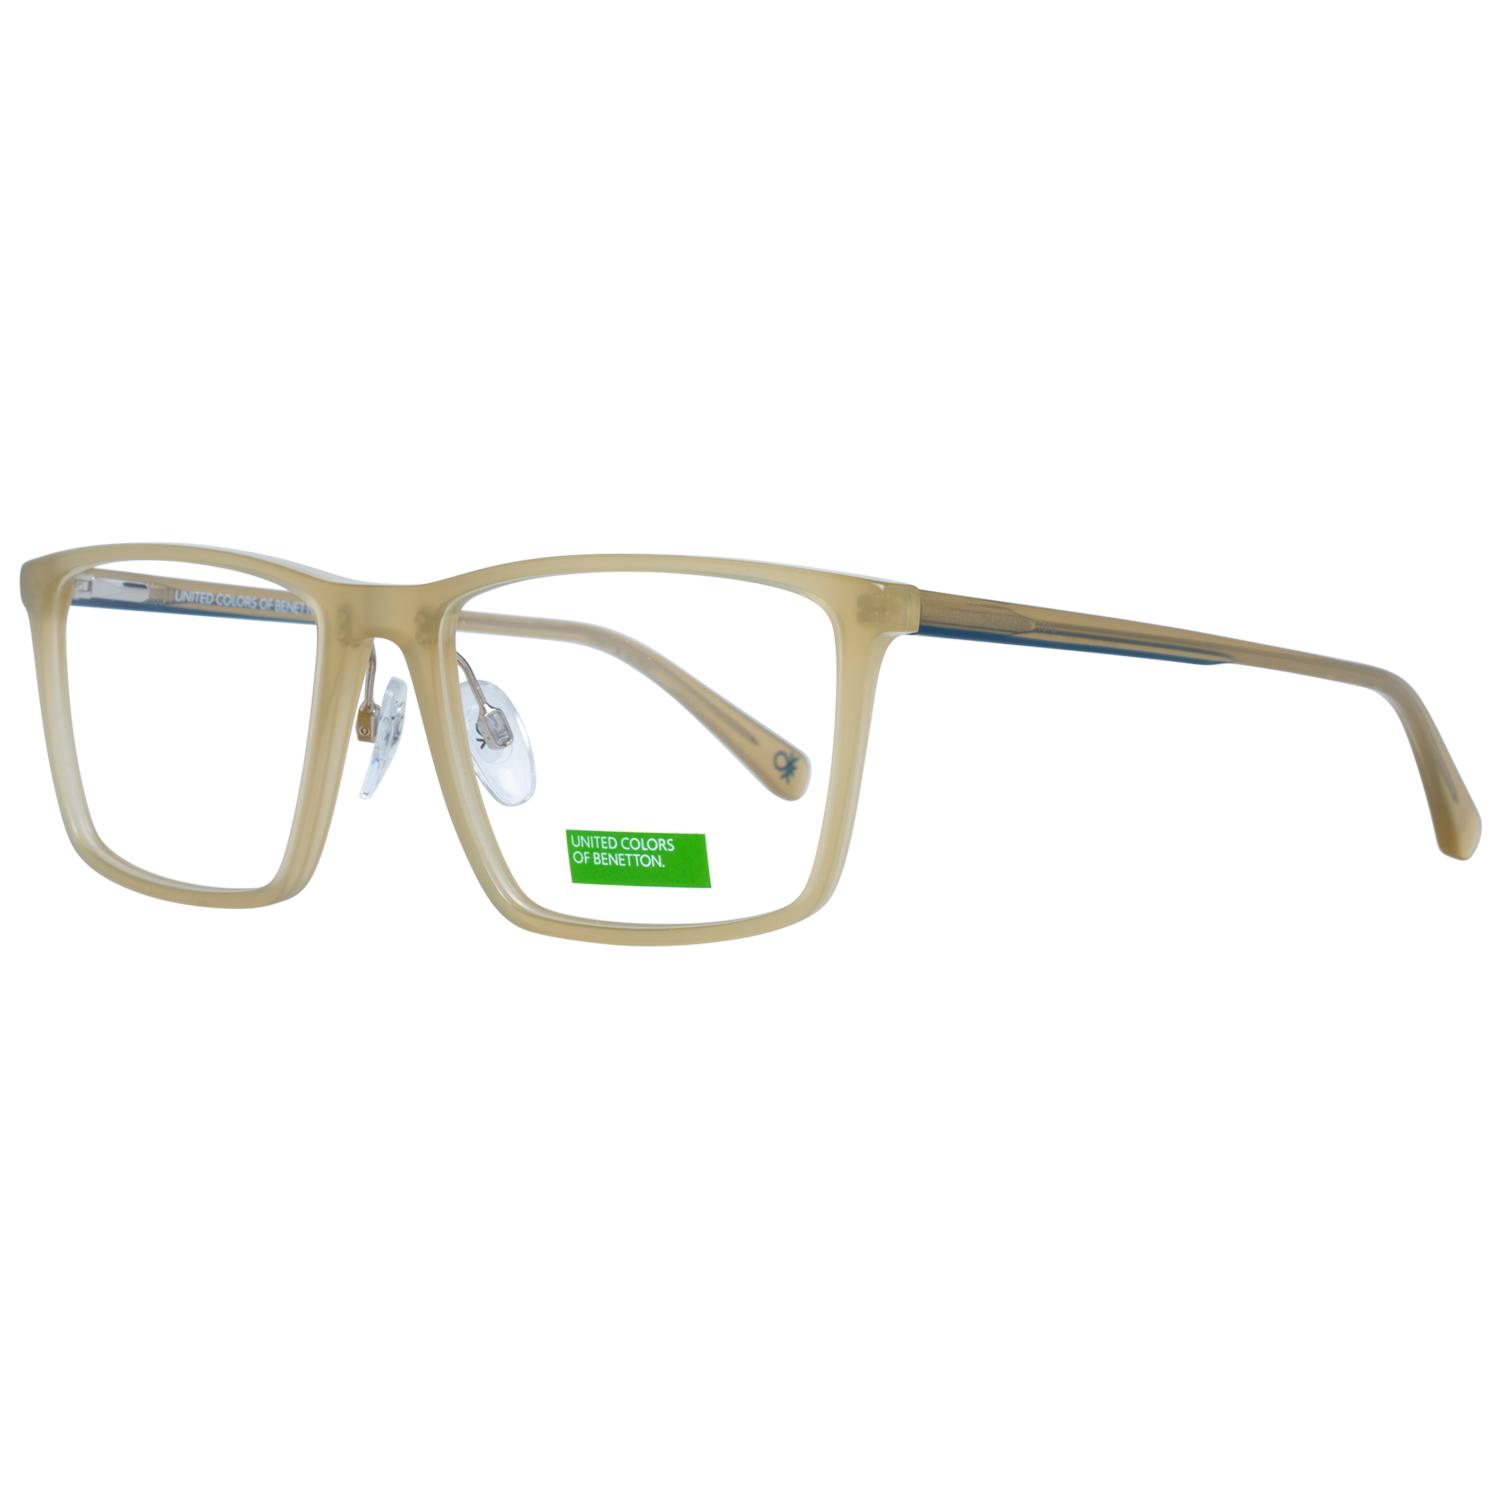 Benetton Frames Benetton Glasses Frames BEO1001 526 54 Eyeglasses Eyewear UK USA Australia 